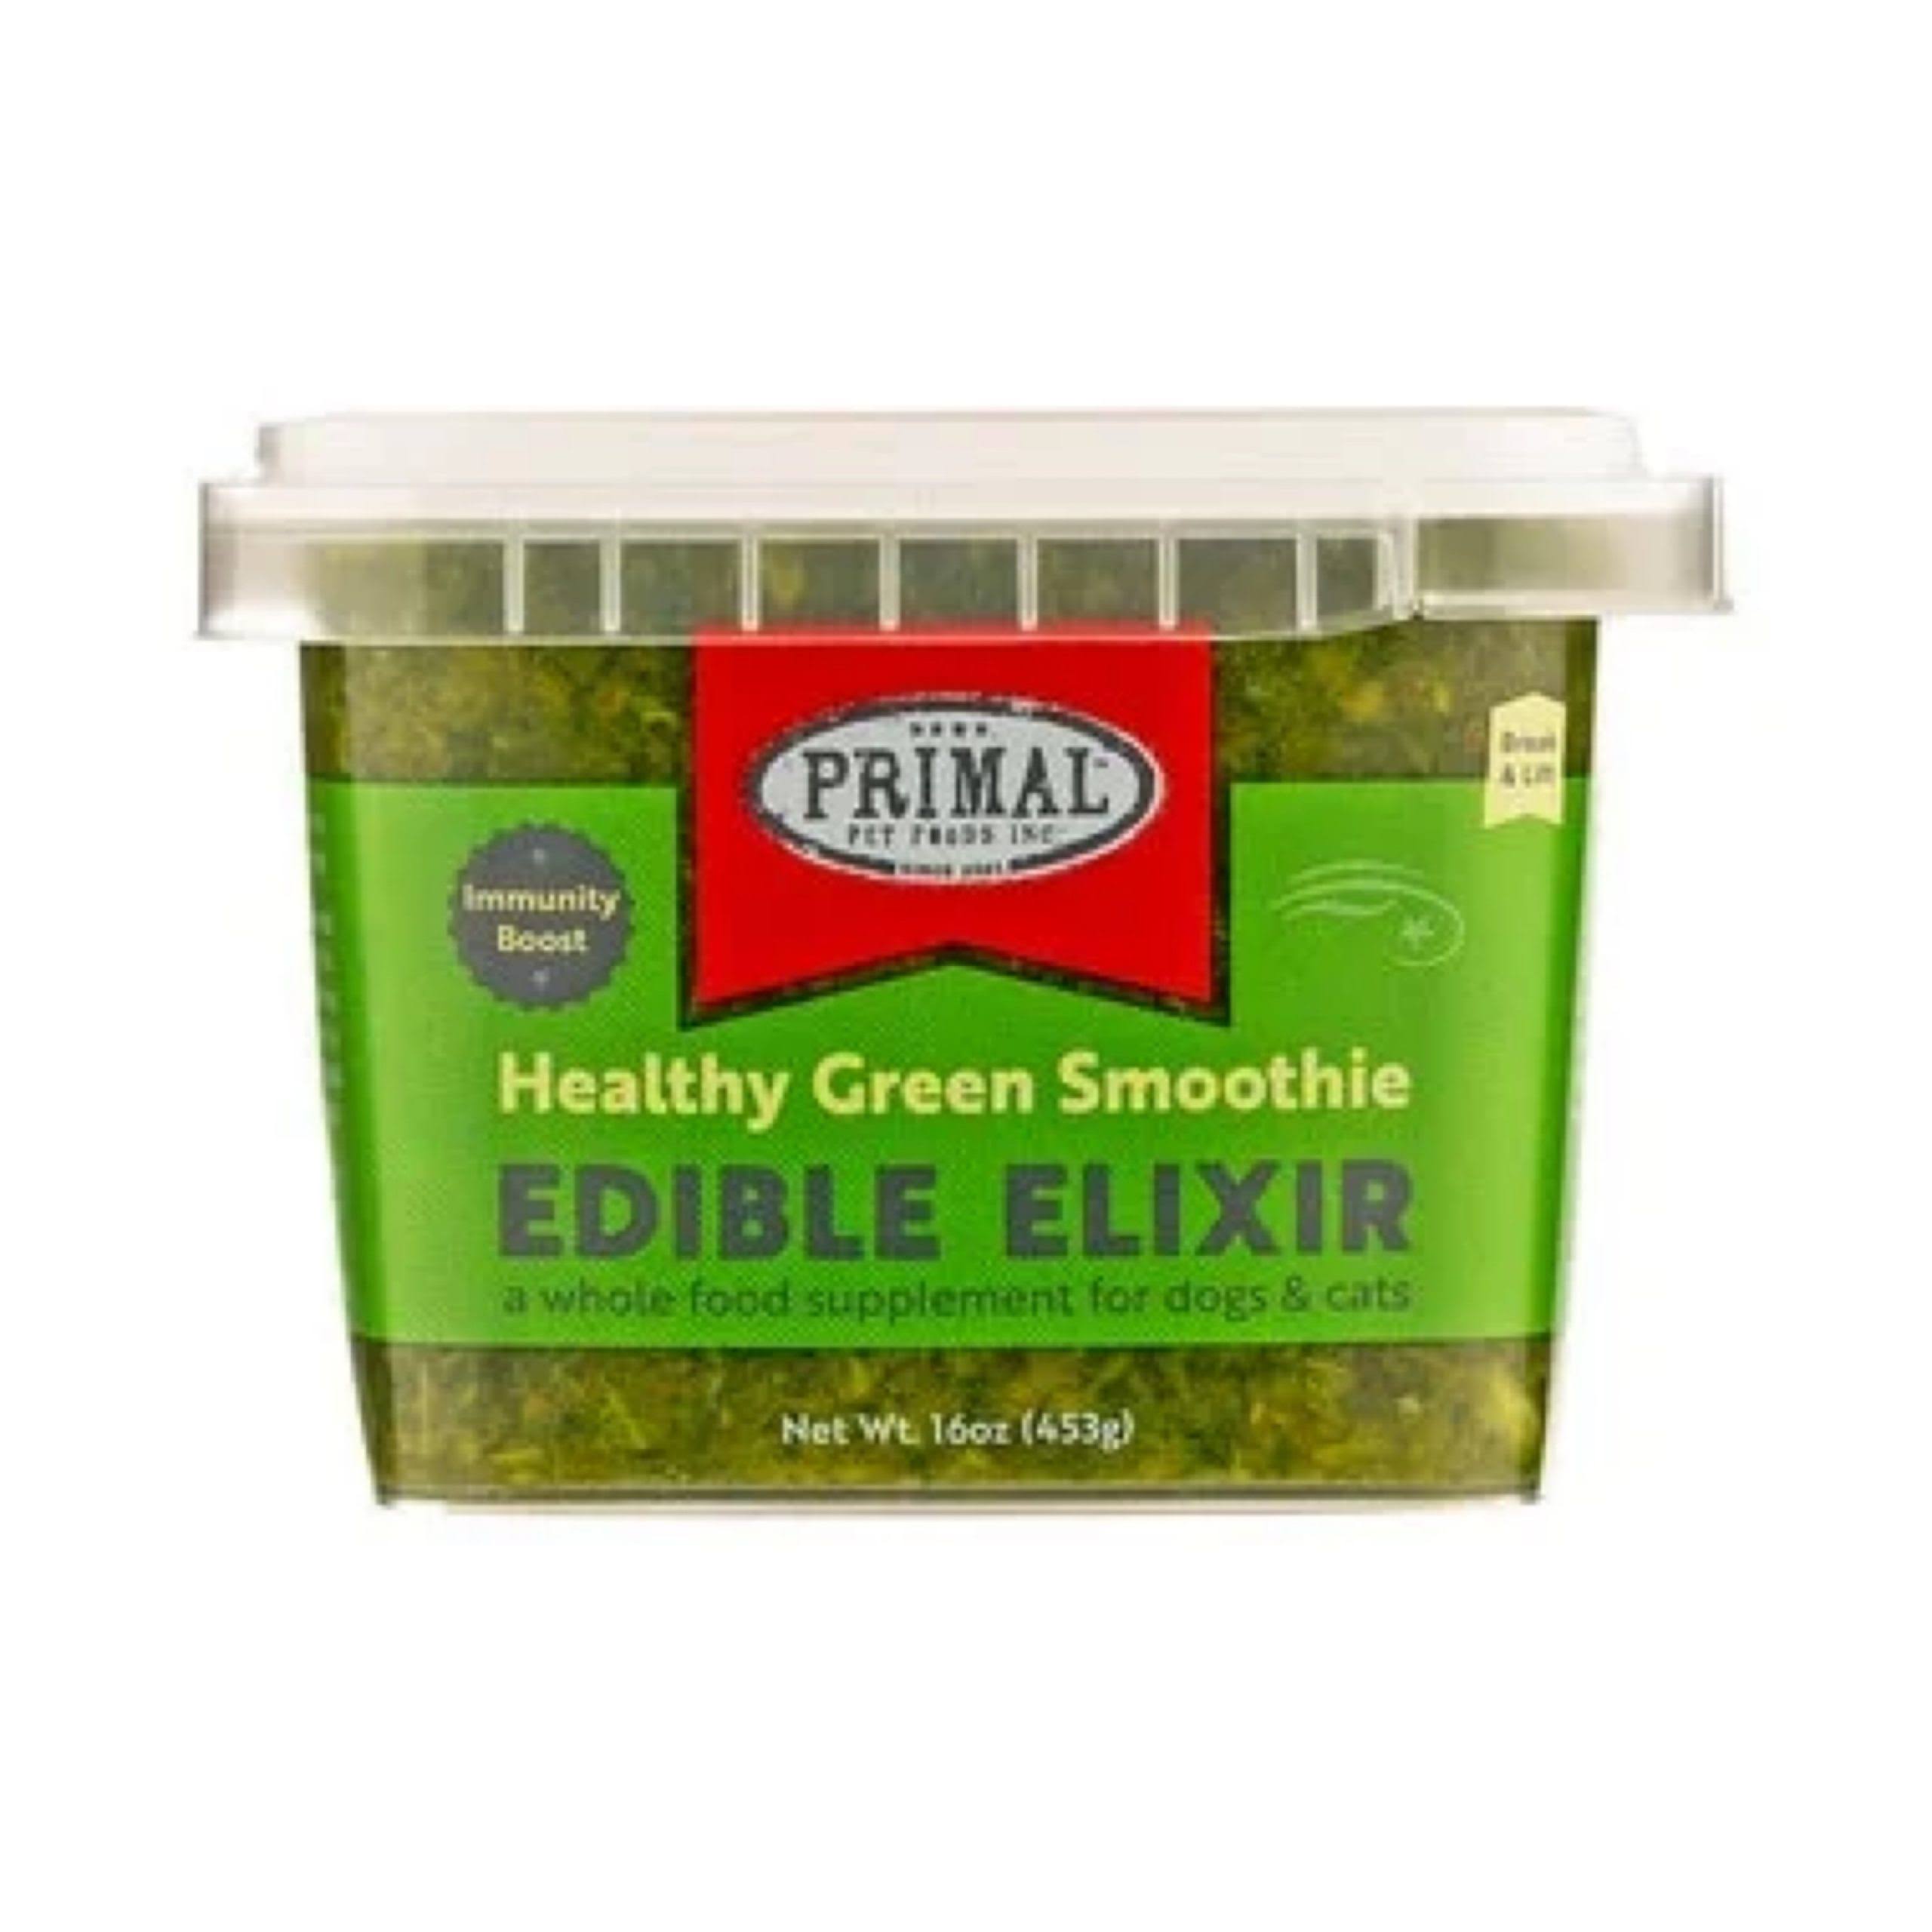 Primal Edible Elixir Healthy Green Smoothie - 16 oz